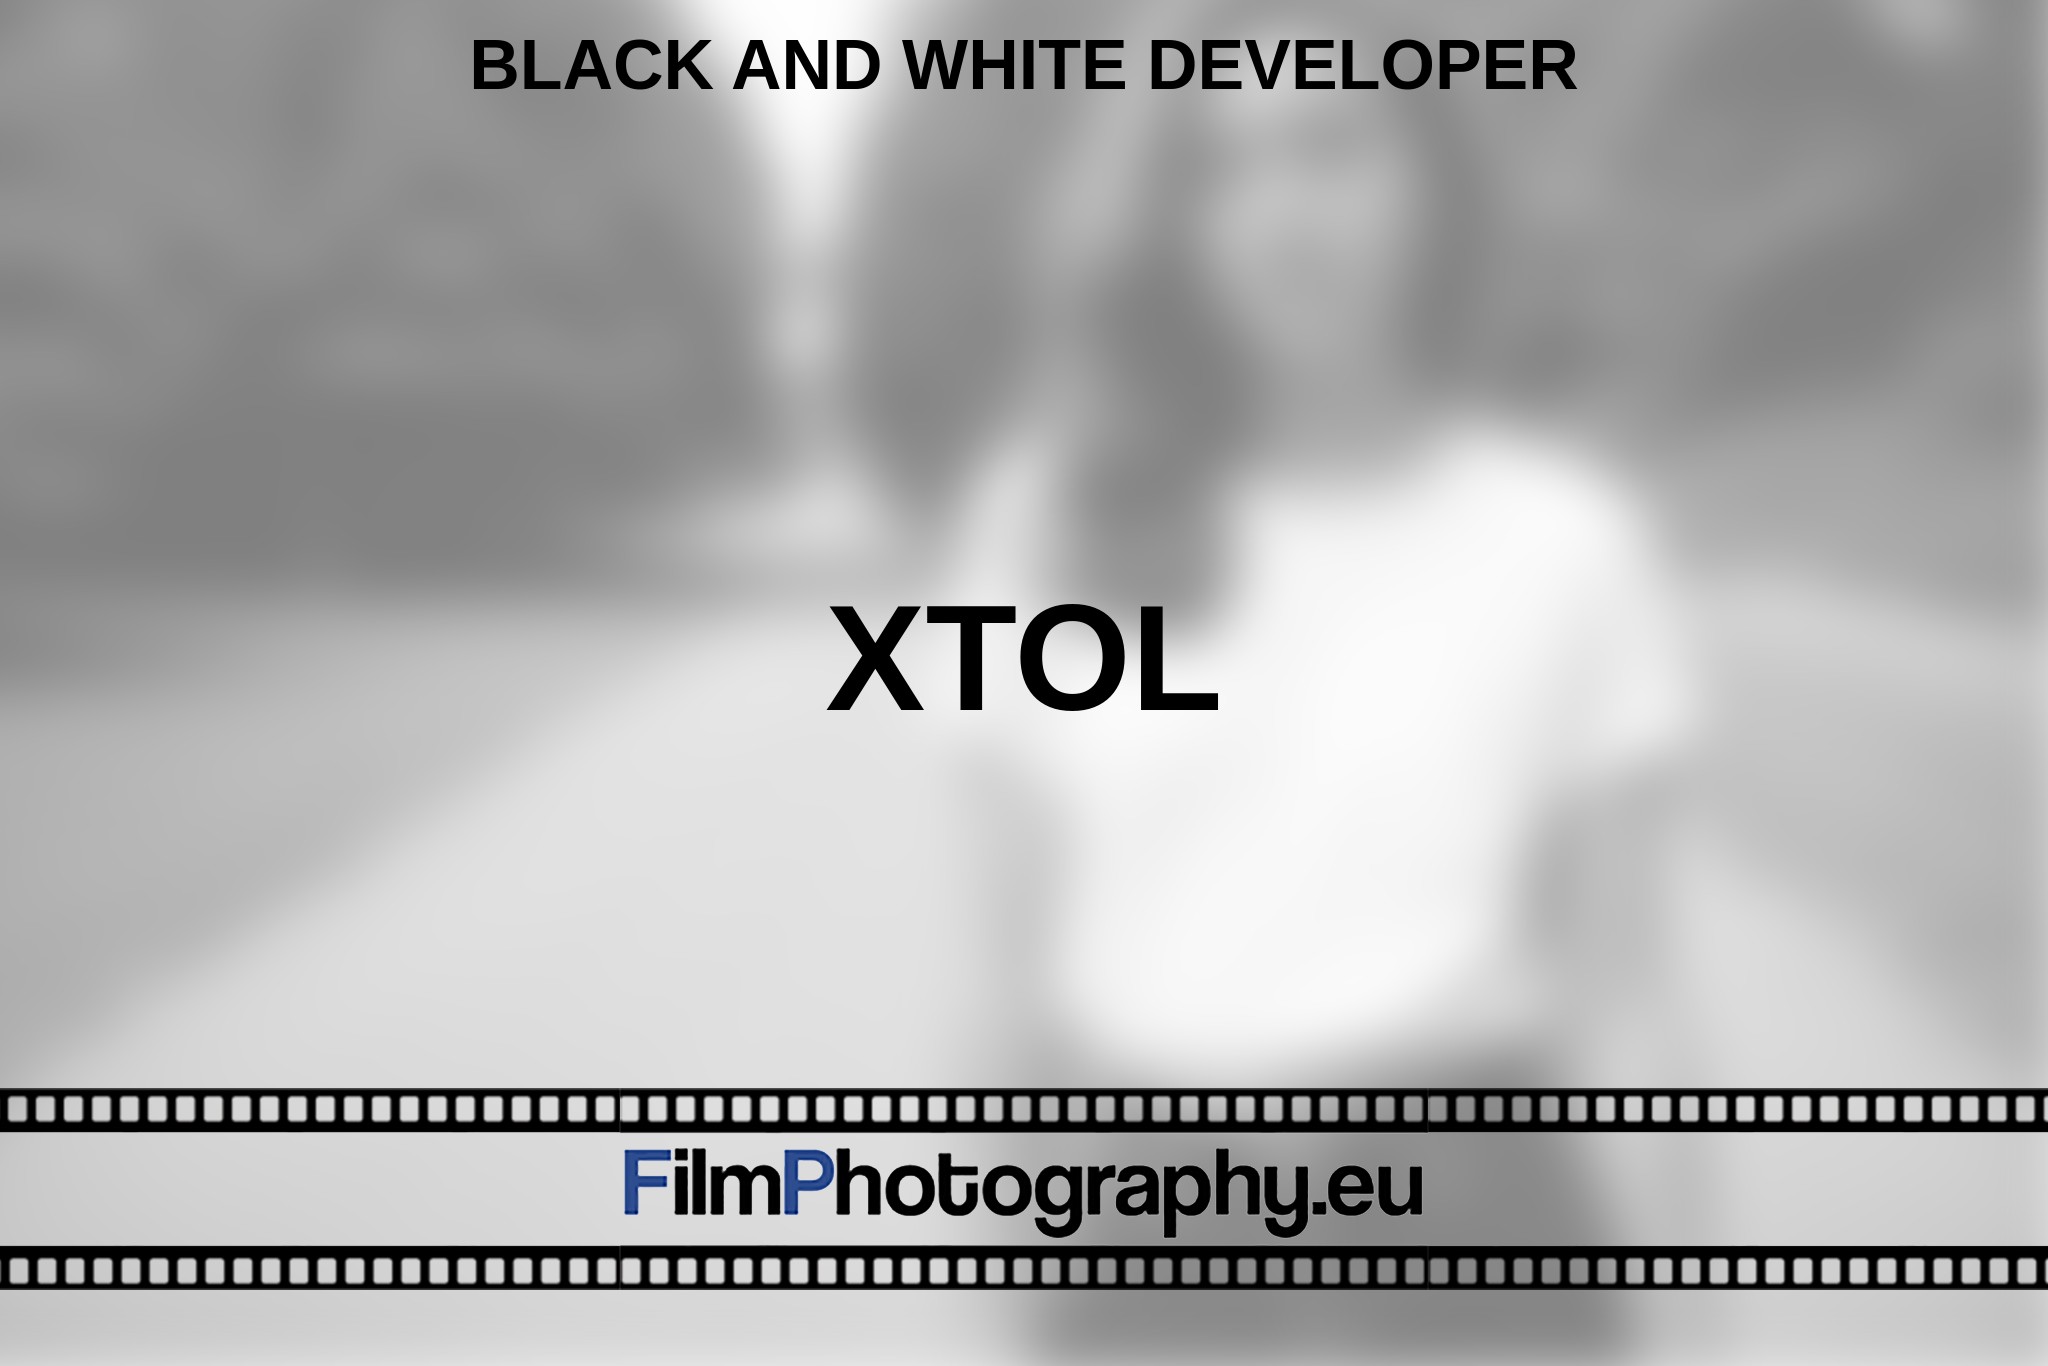 xtol-black-and-white-developer-en-bnv.jpg